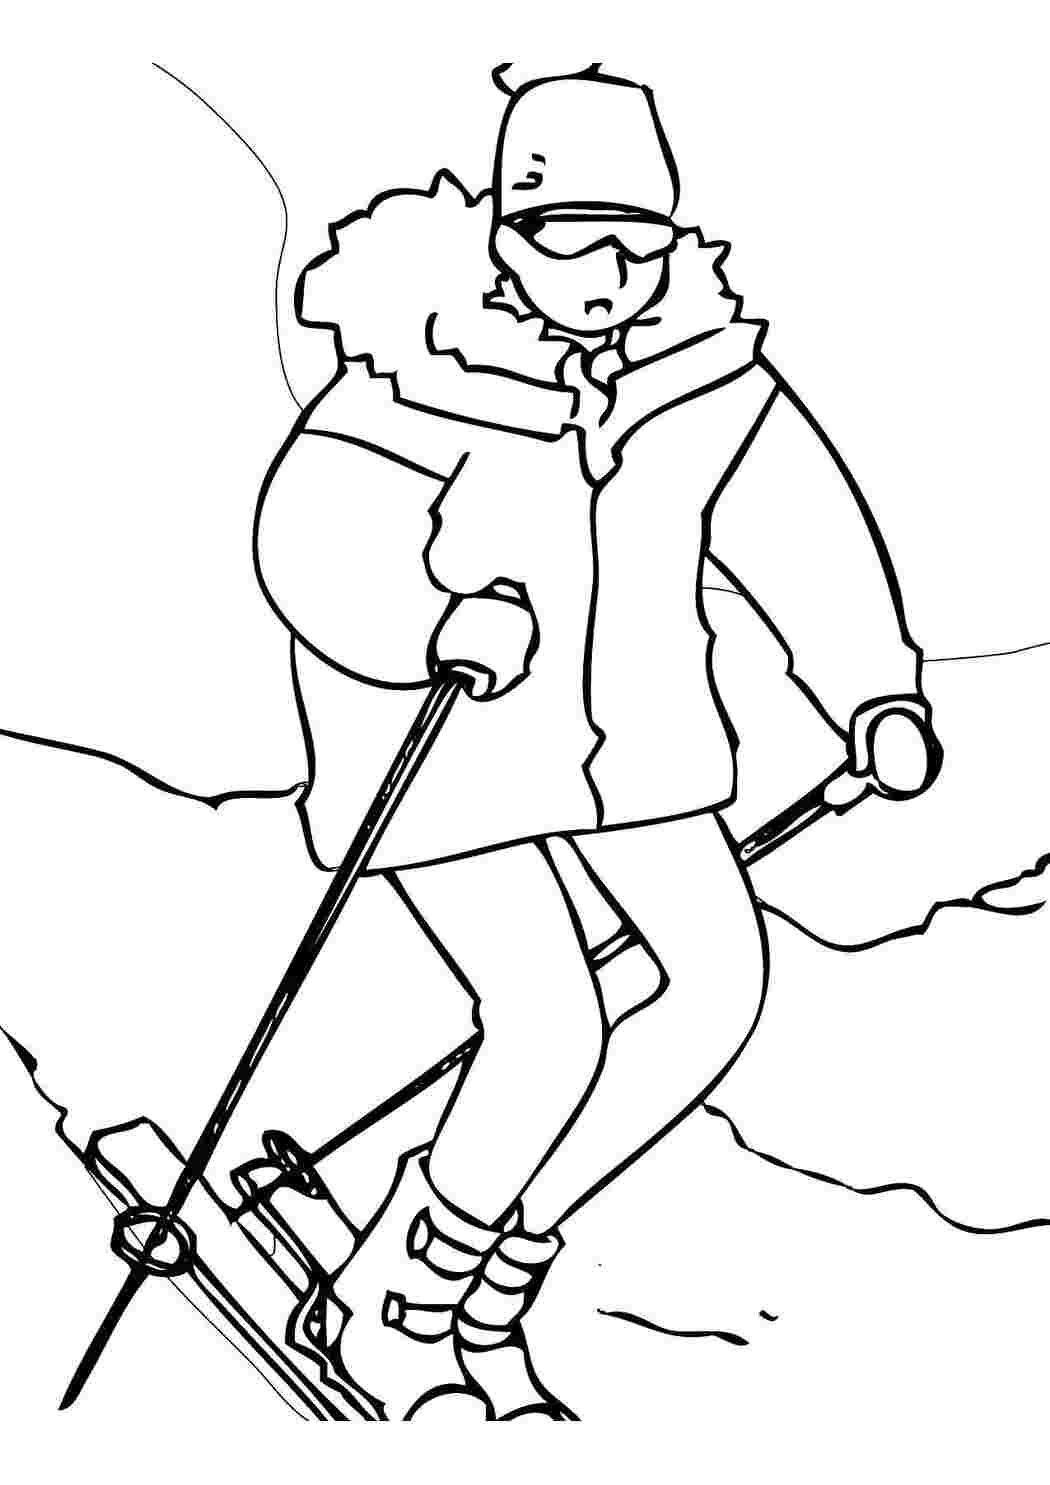 катание на лыжах очень полезный зимний вид спорта